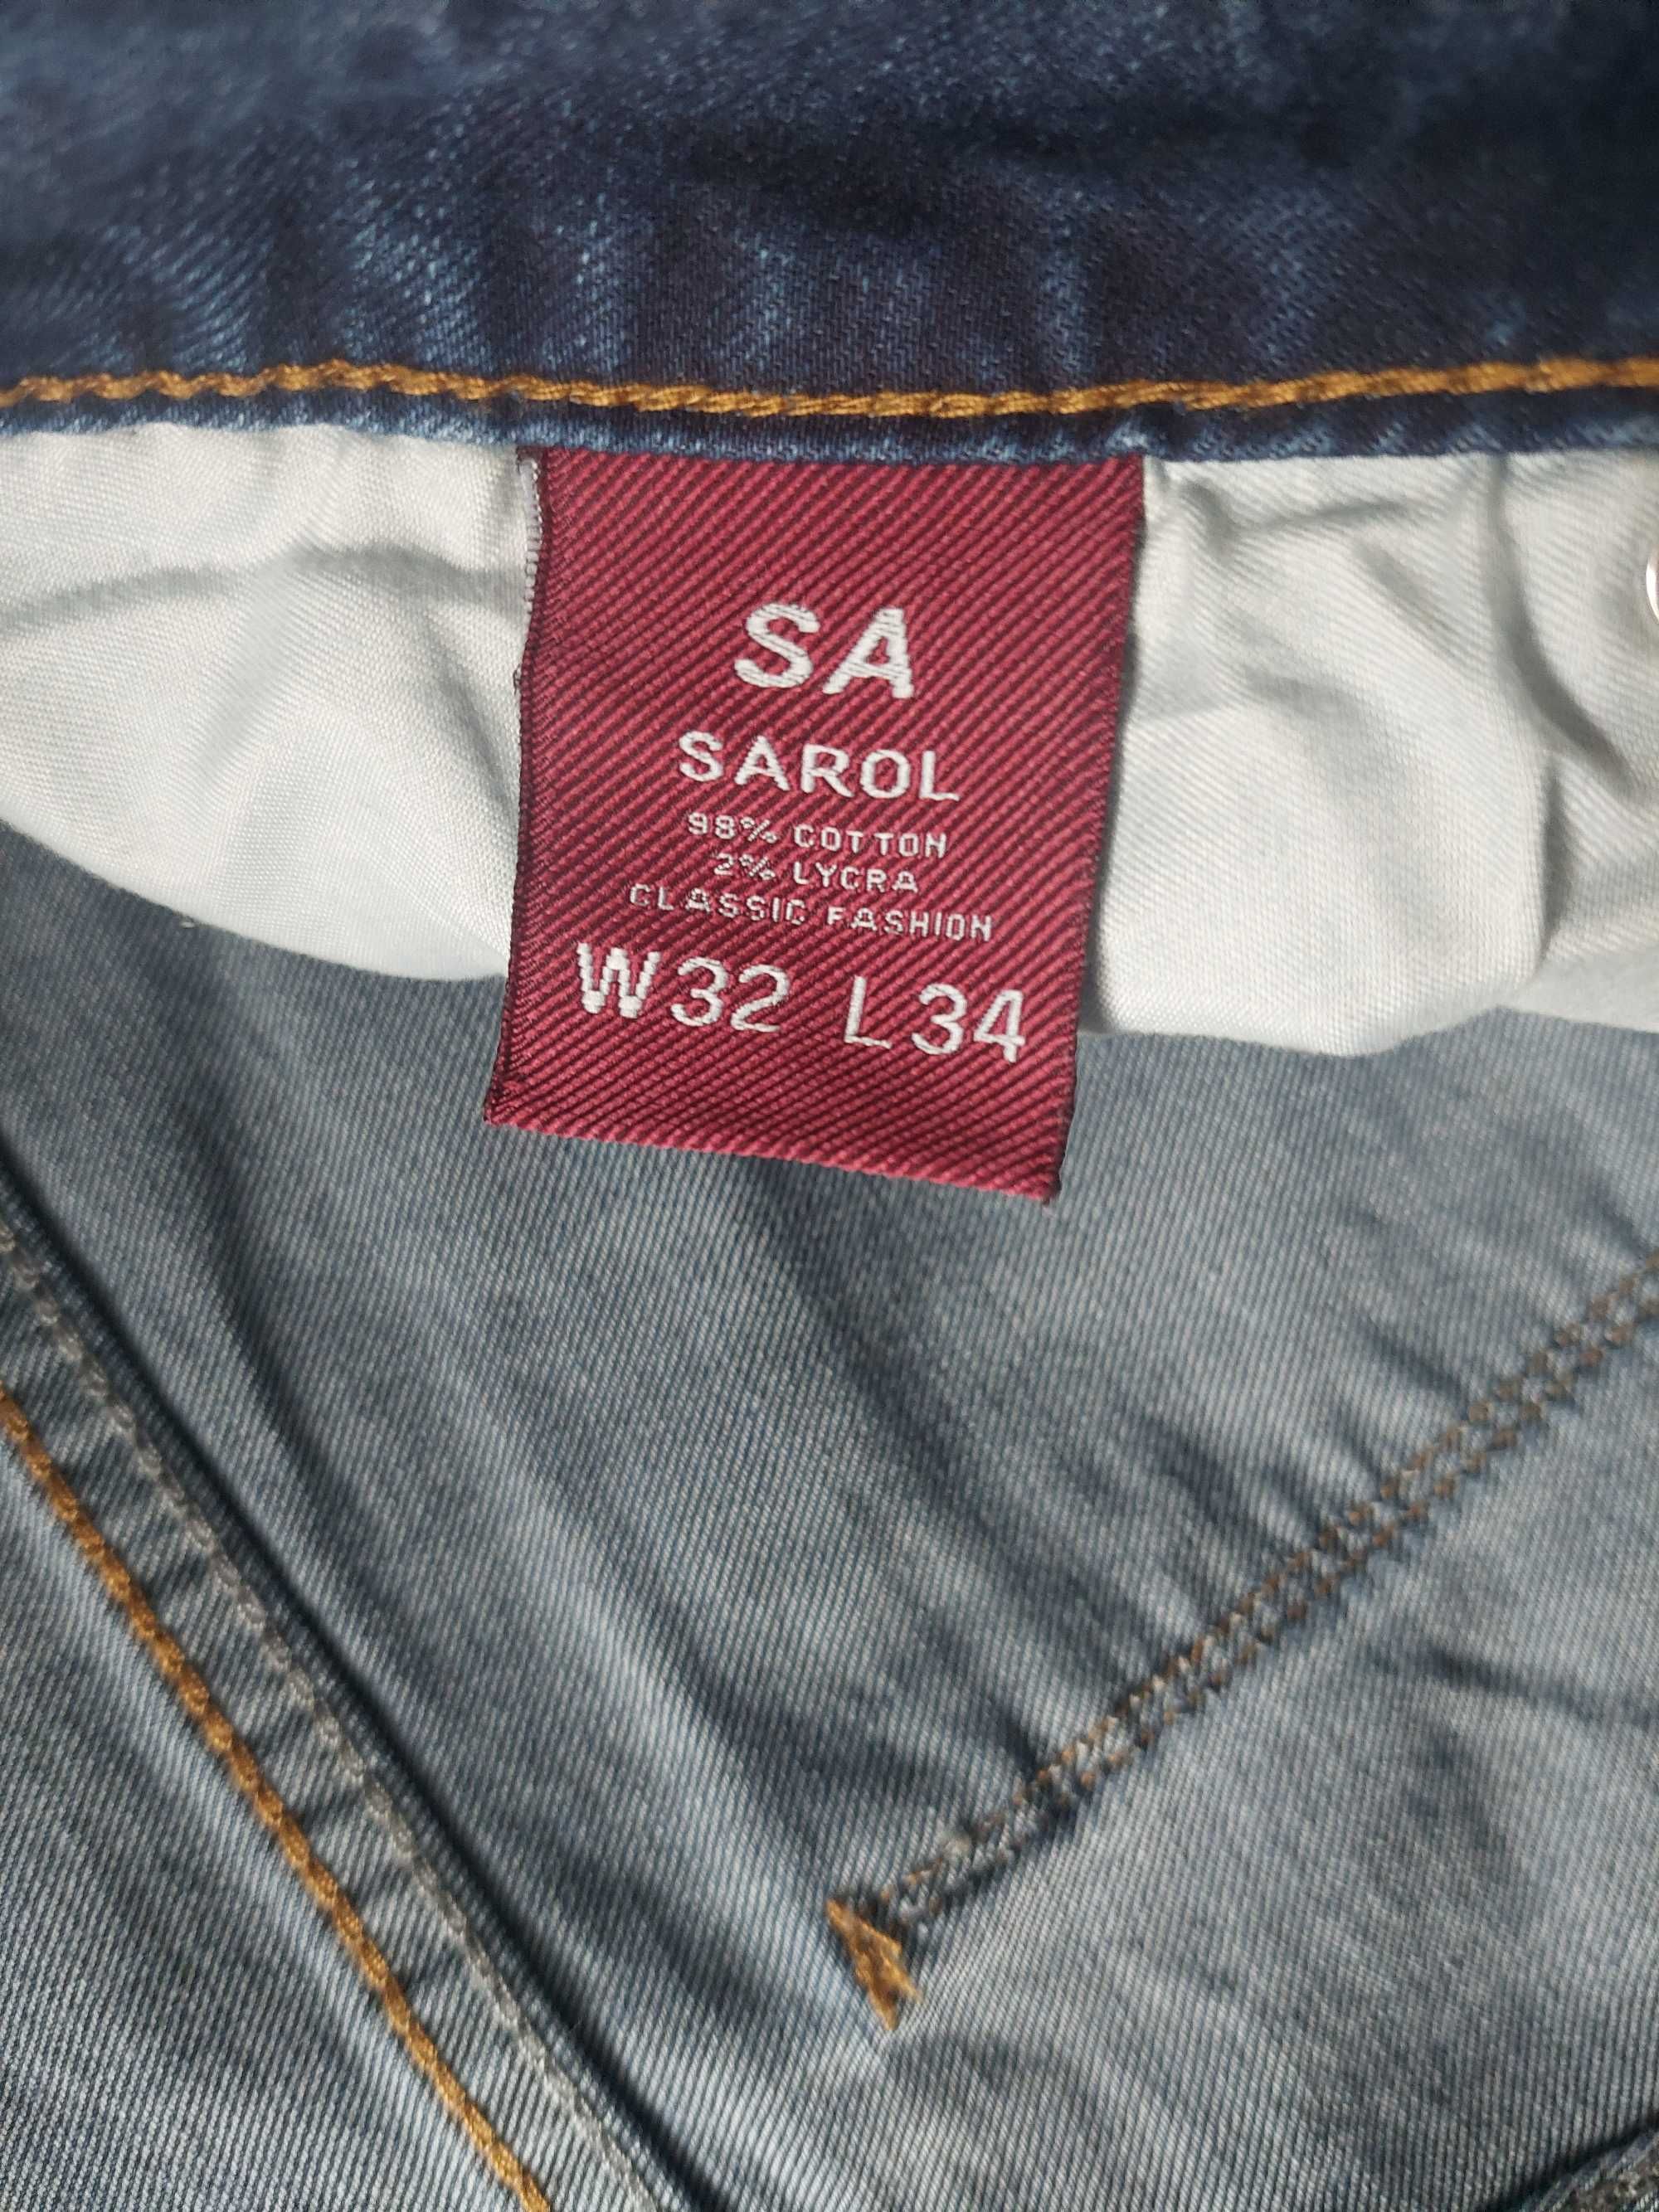 SUPER spodnie jeansowe męskie W32 l34 NOWE!